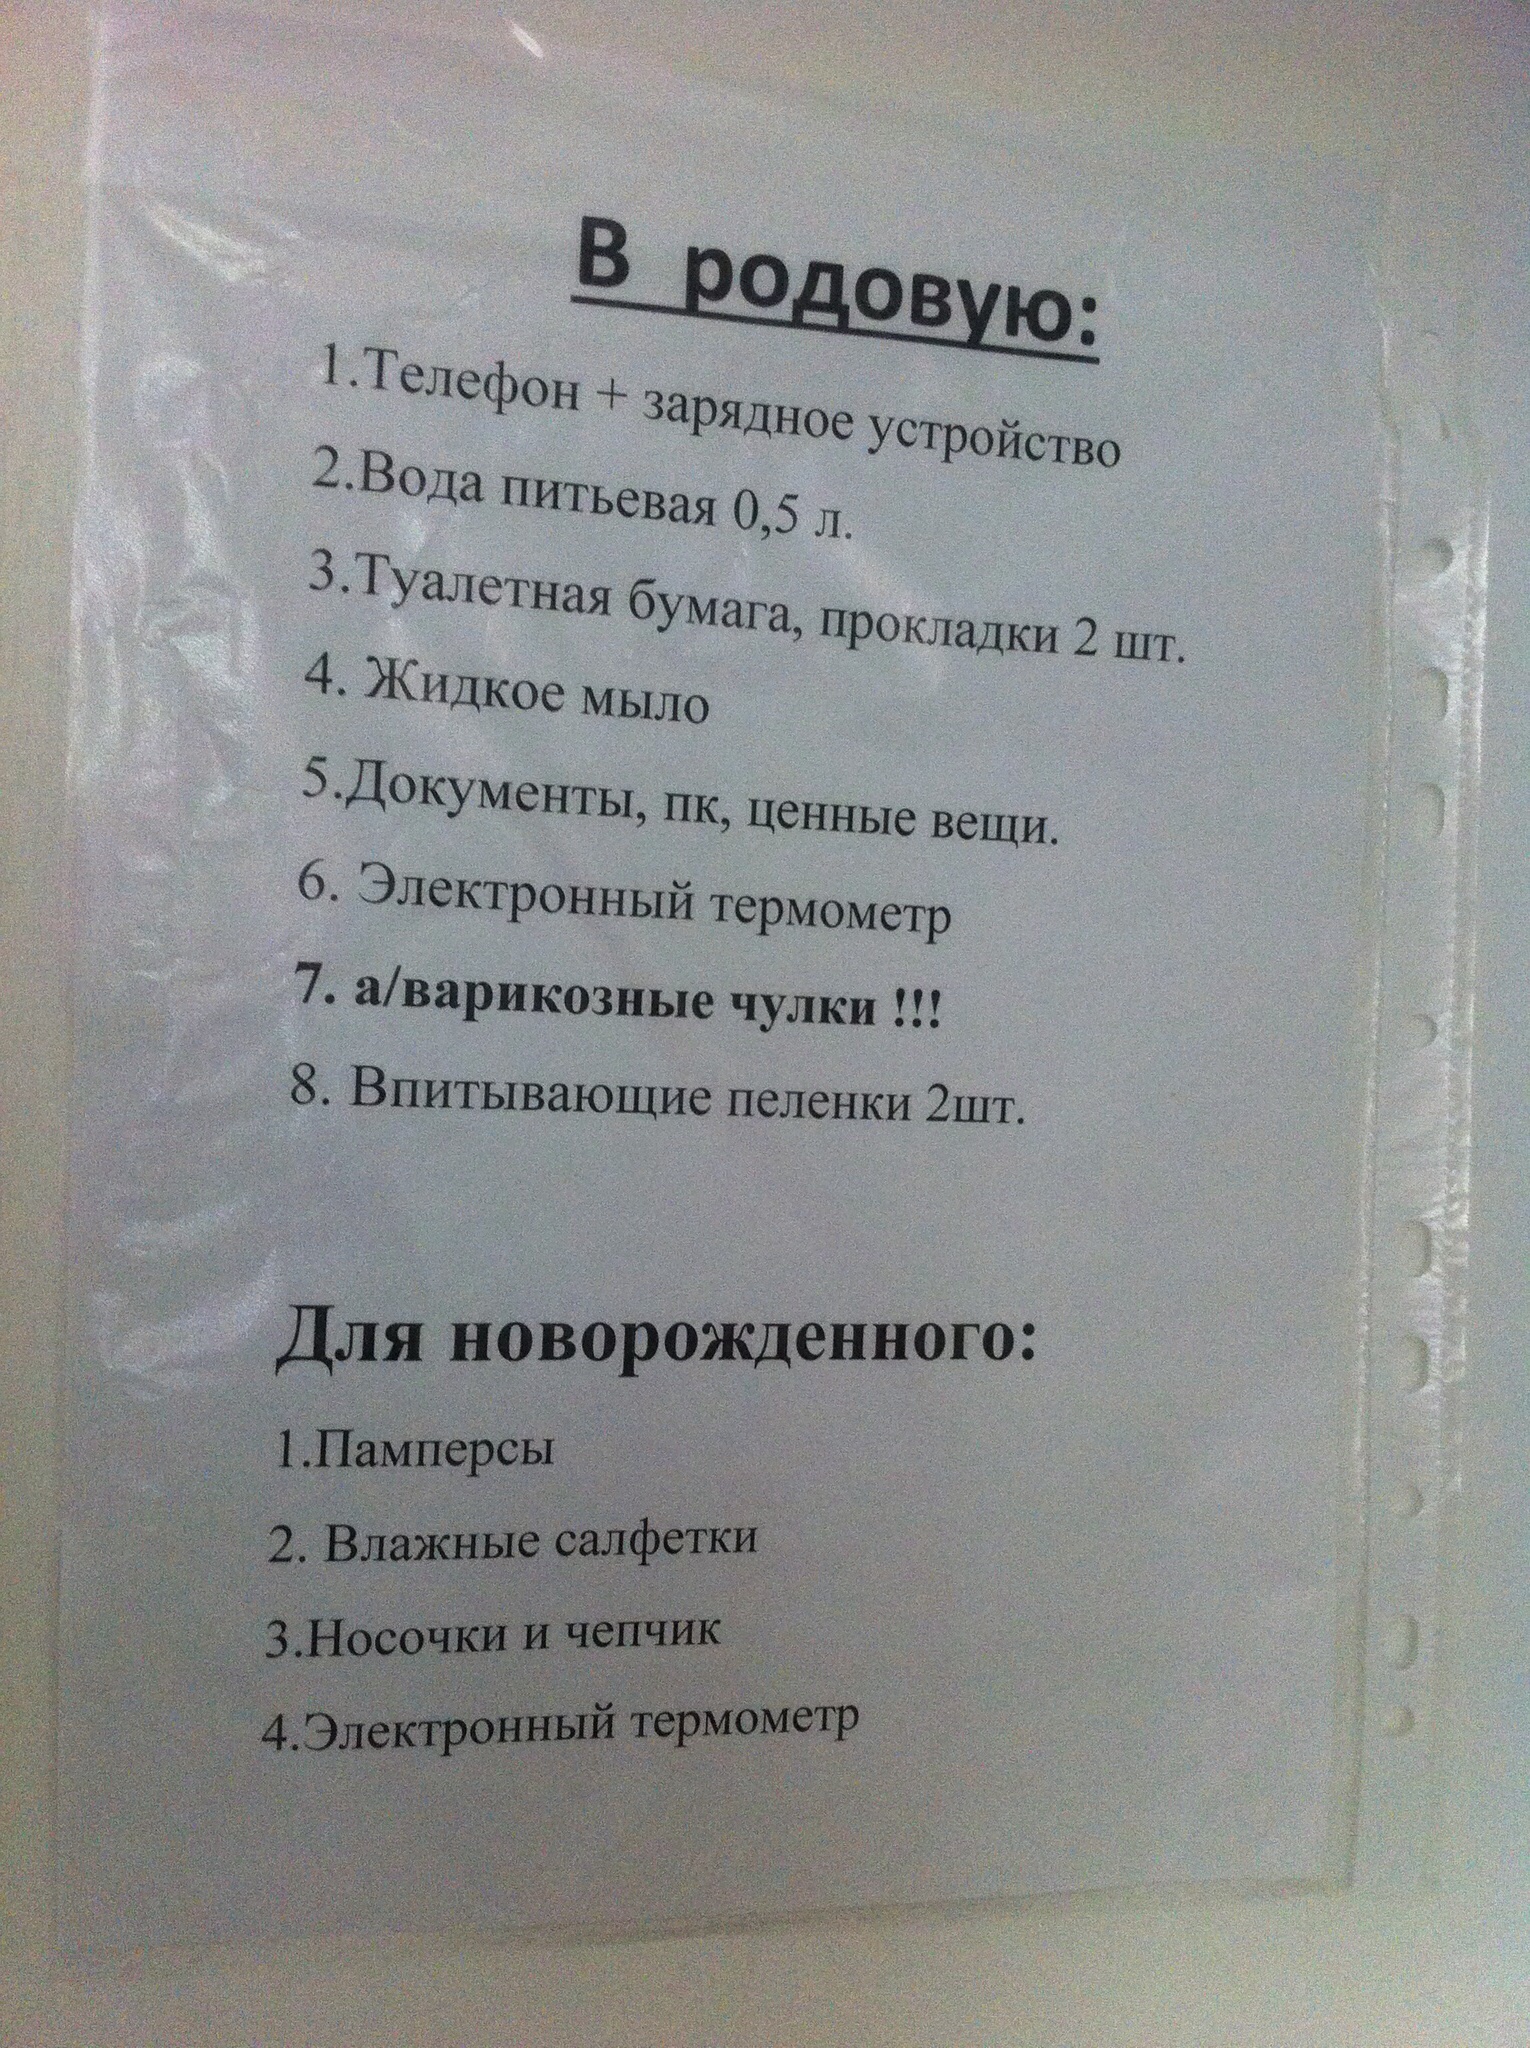 Список в роддом Омм Екатеринбург